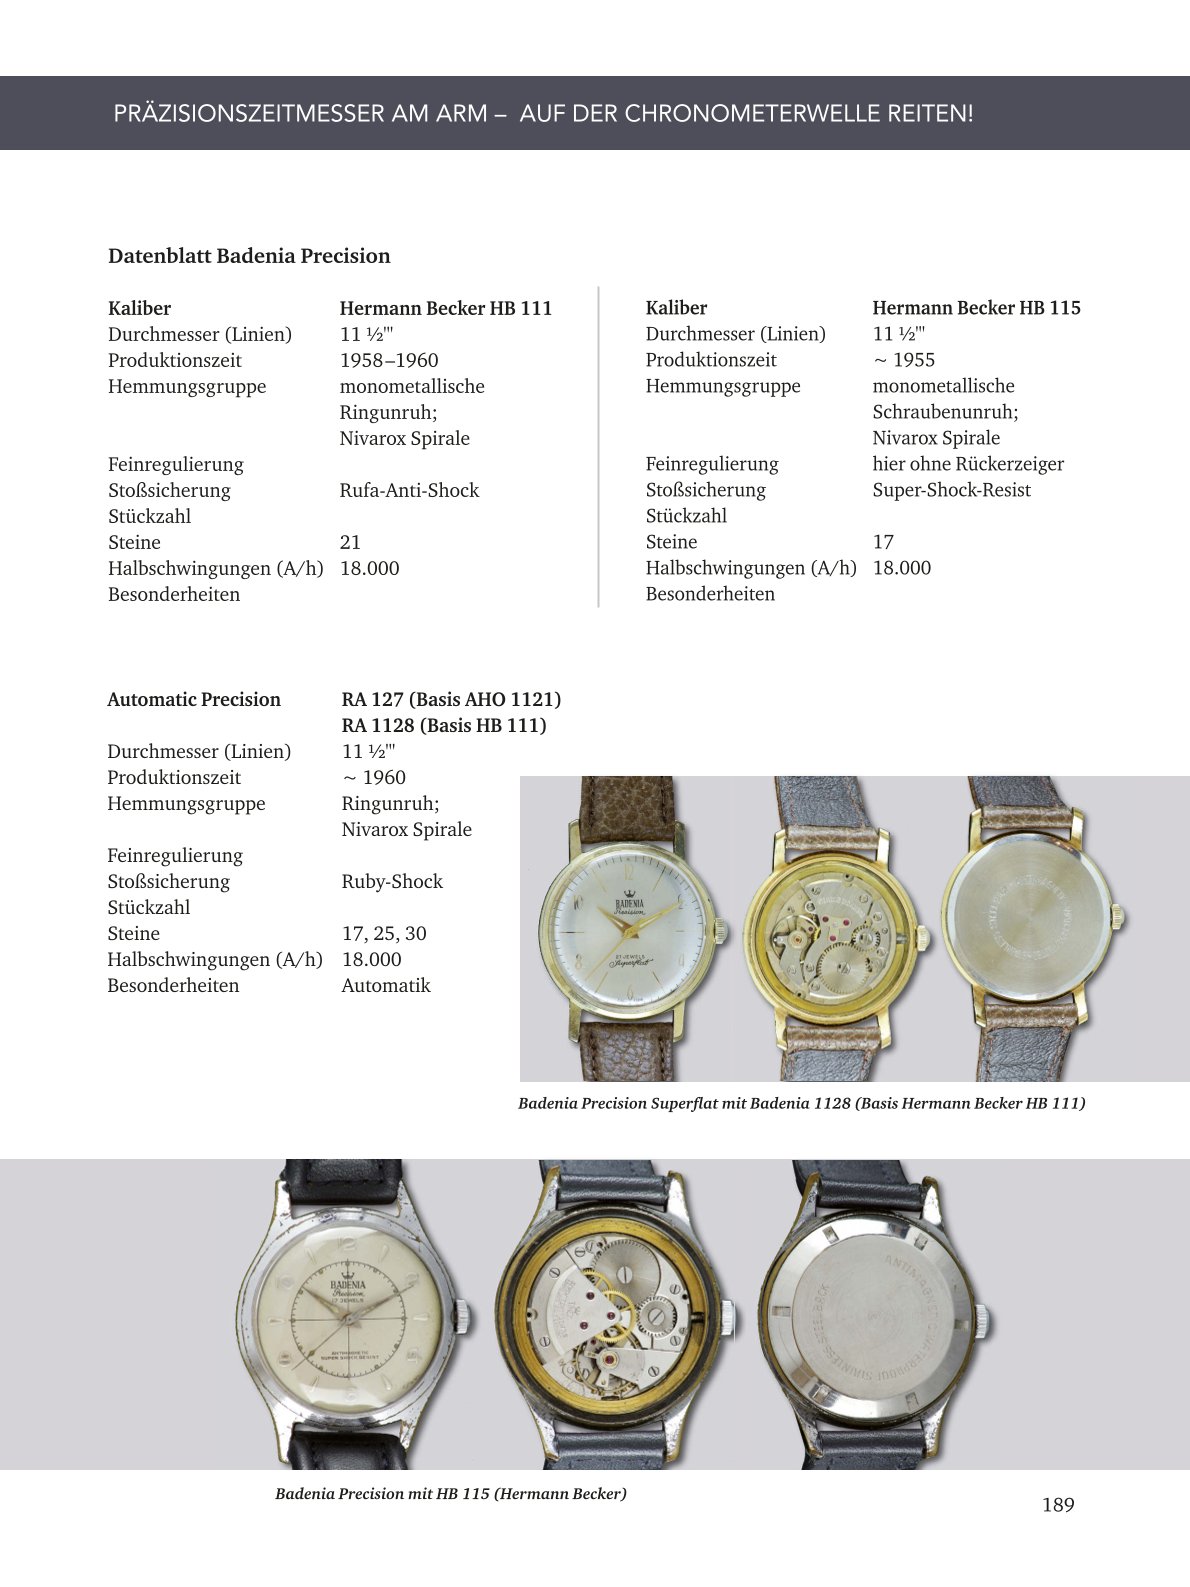 Deutsche Armbandchronometer und Qualitätsuhren 1935 – 1980